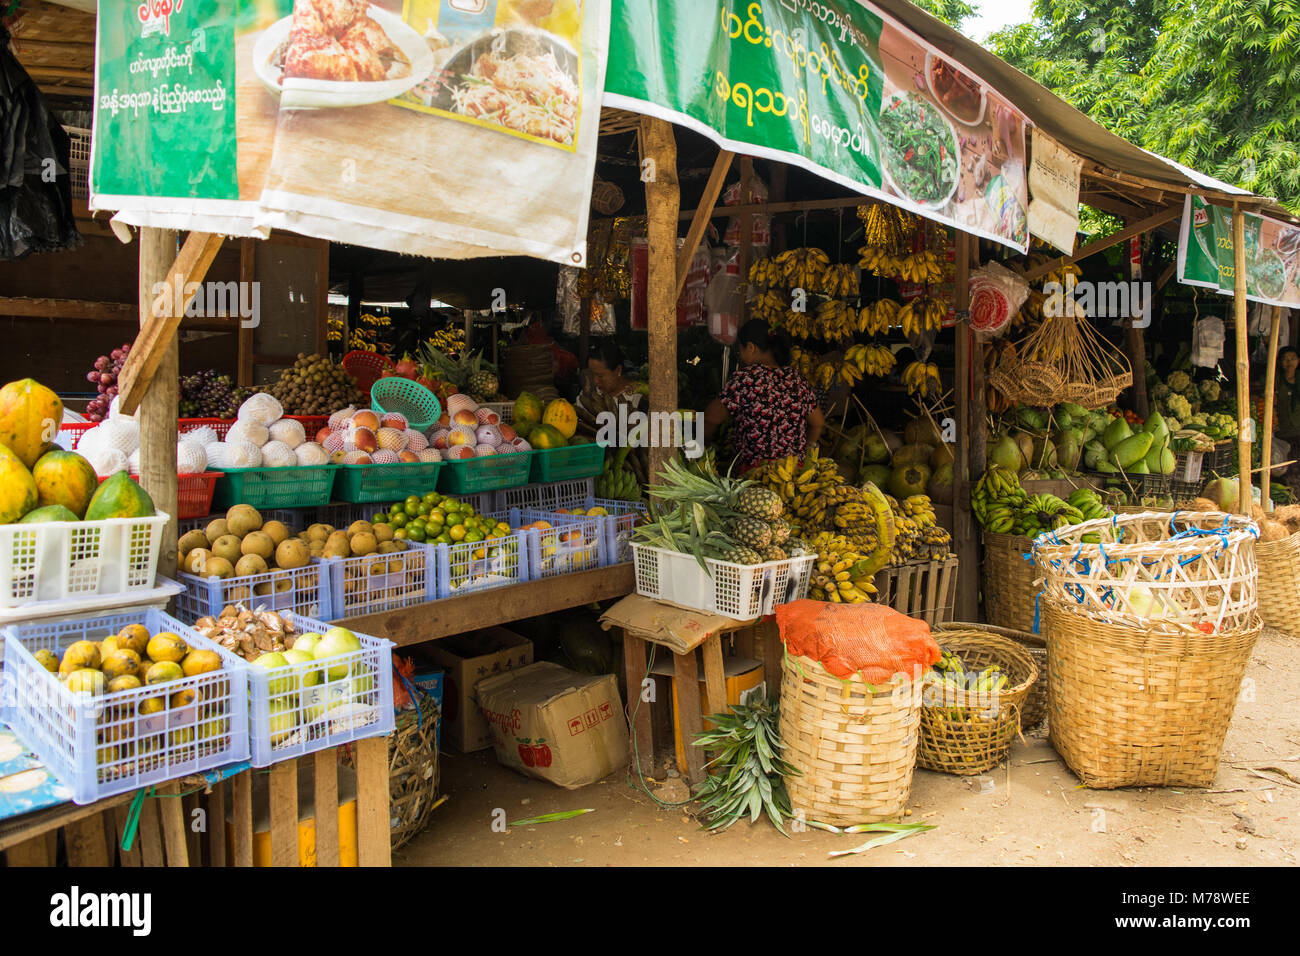 Birmano Nyuang asiatici U mercato donna di stallo che vendono differenti di frutta e verdura in cassette e cestini di canna, vicino a Bagan, birmania, myanmar, SE Asia Foto Stock